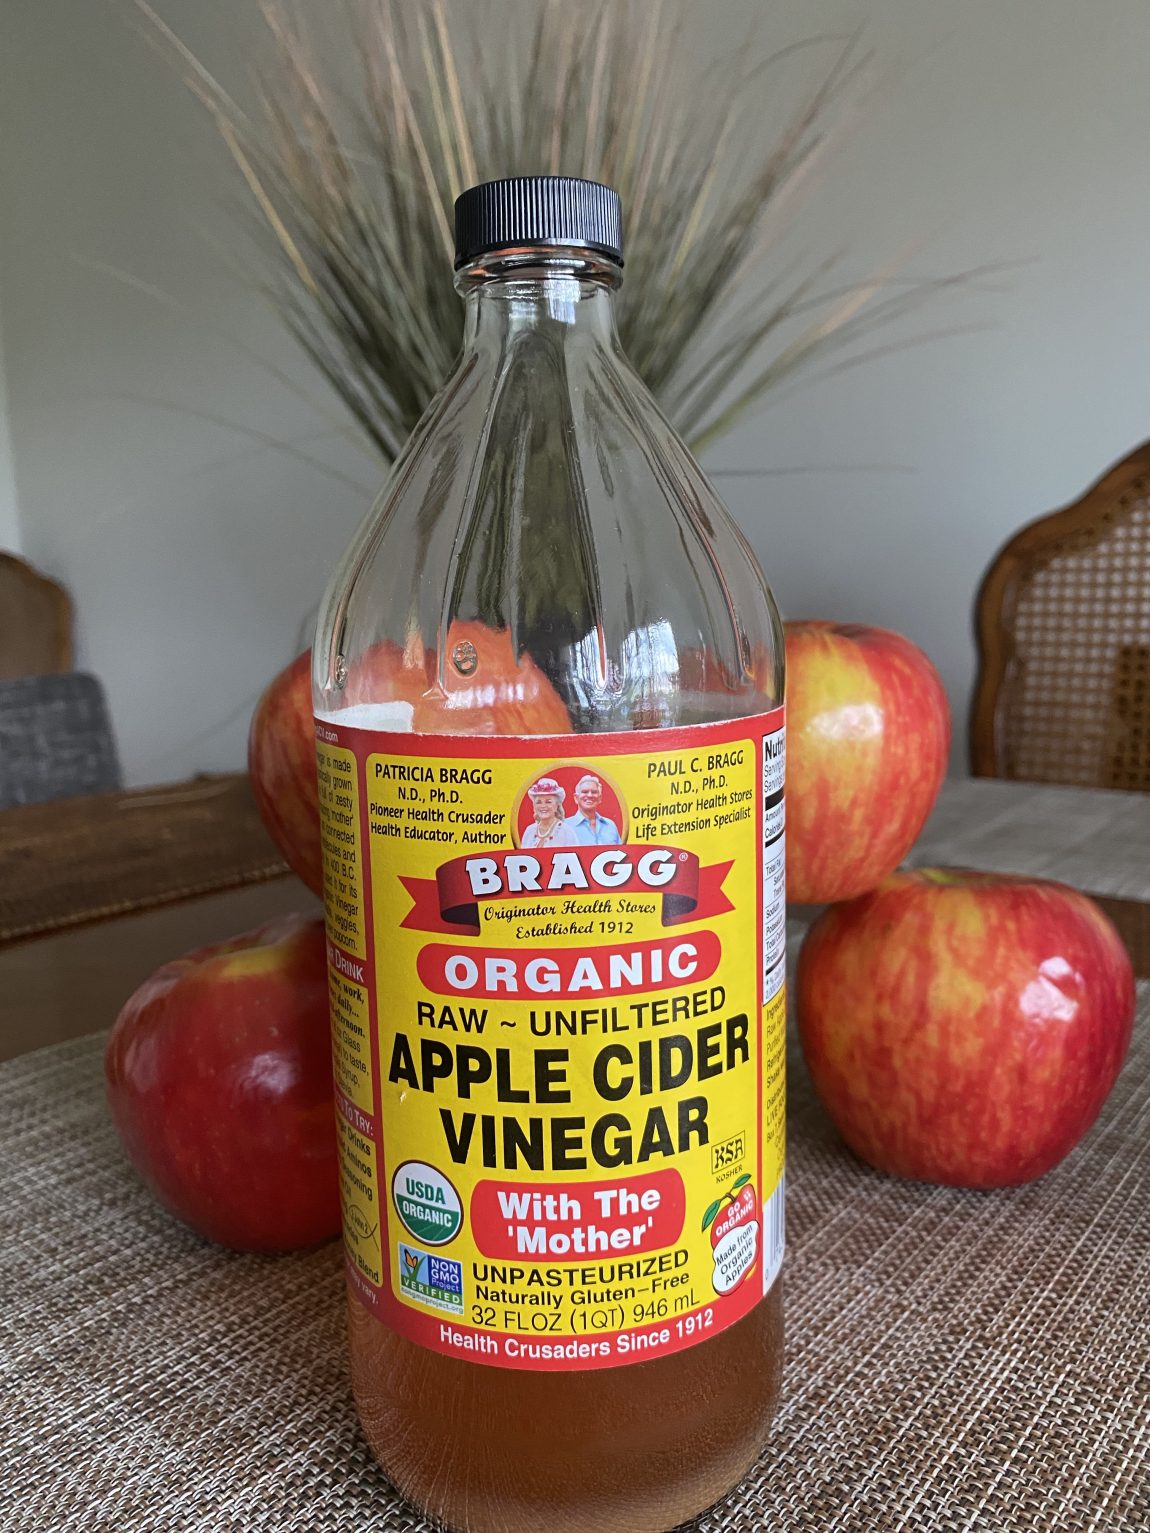 A bottle of apple cider vinegar and apples